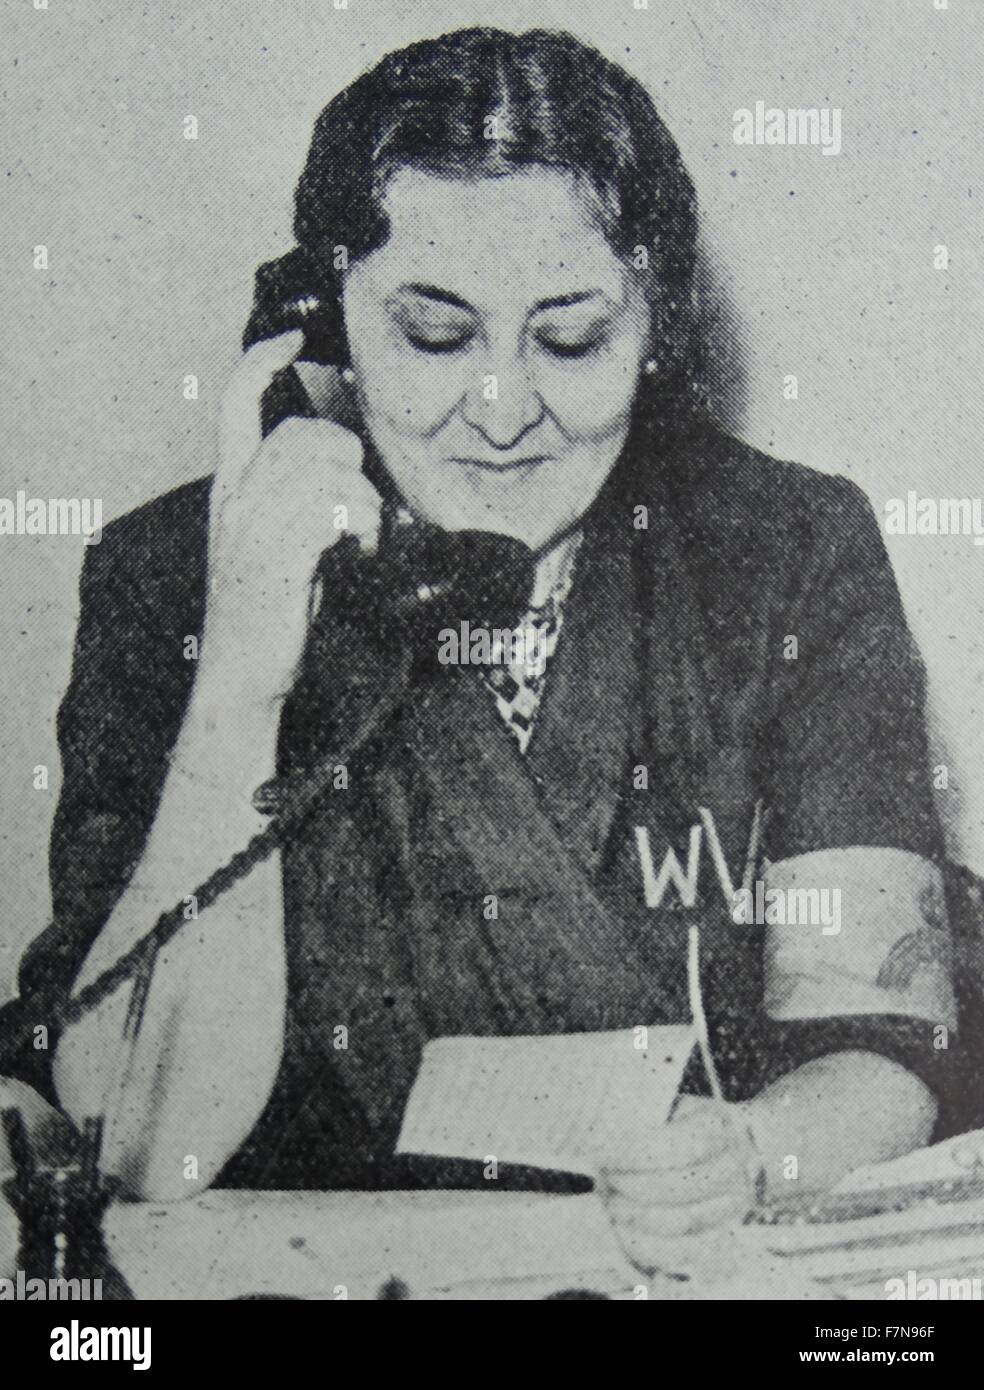 Photo de Stella Isaacs, marquise de lecture (1894-1971) un aristocrate anglais, philanthrope, fondateur et président de la Women's Voluntary Service (WVS). Le WVS est maintenant connu sous le nom de Royal Service volontaire. Datée 1939 Banque D'Images